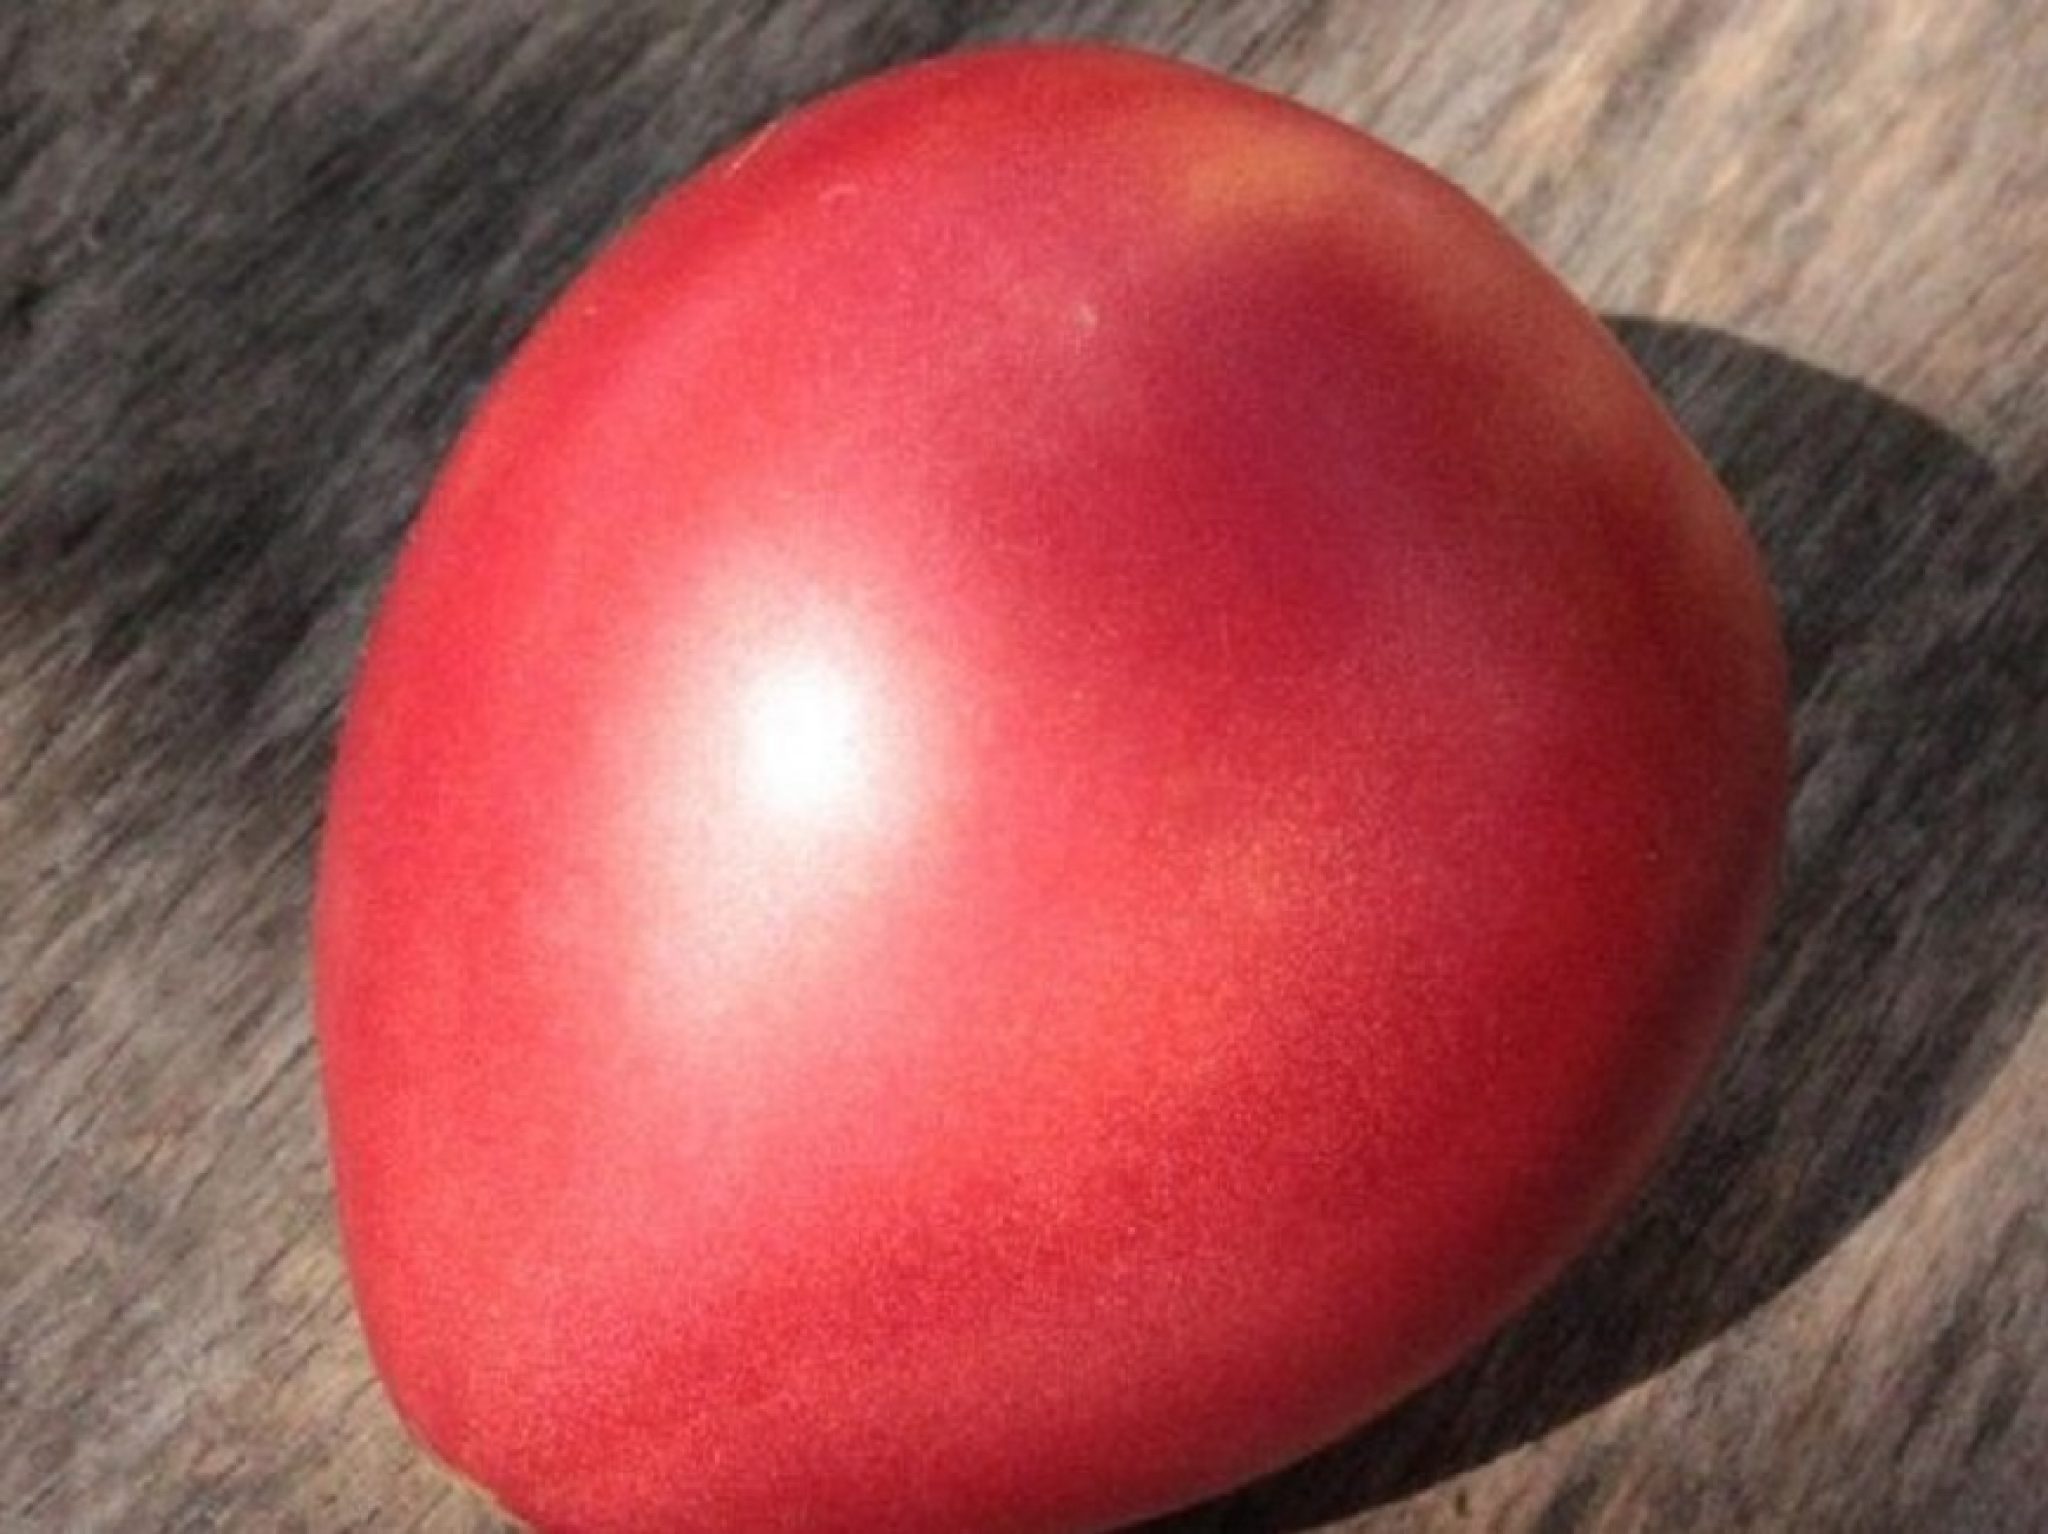 Сорт томата розовое сердце